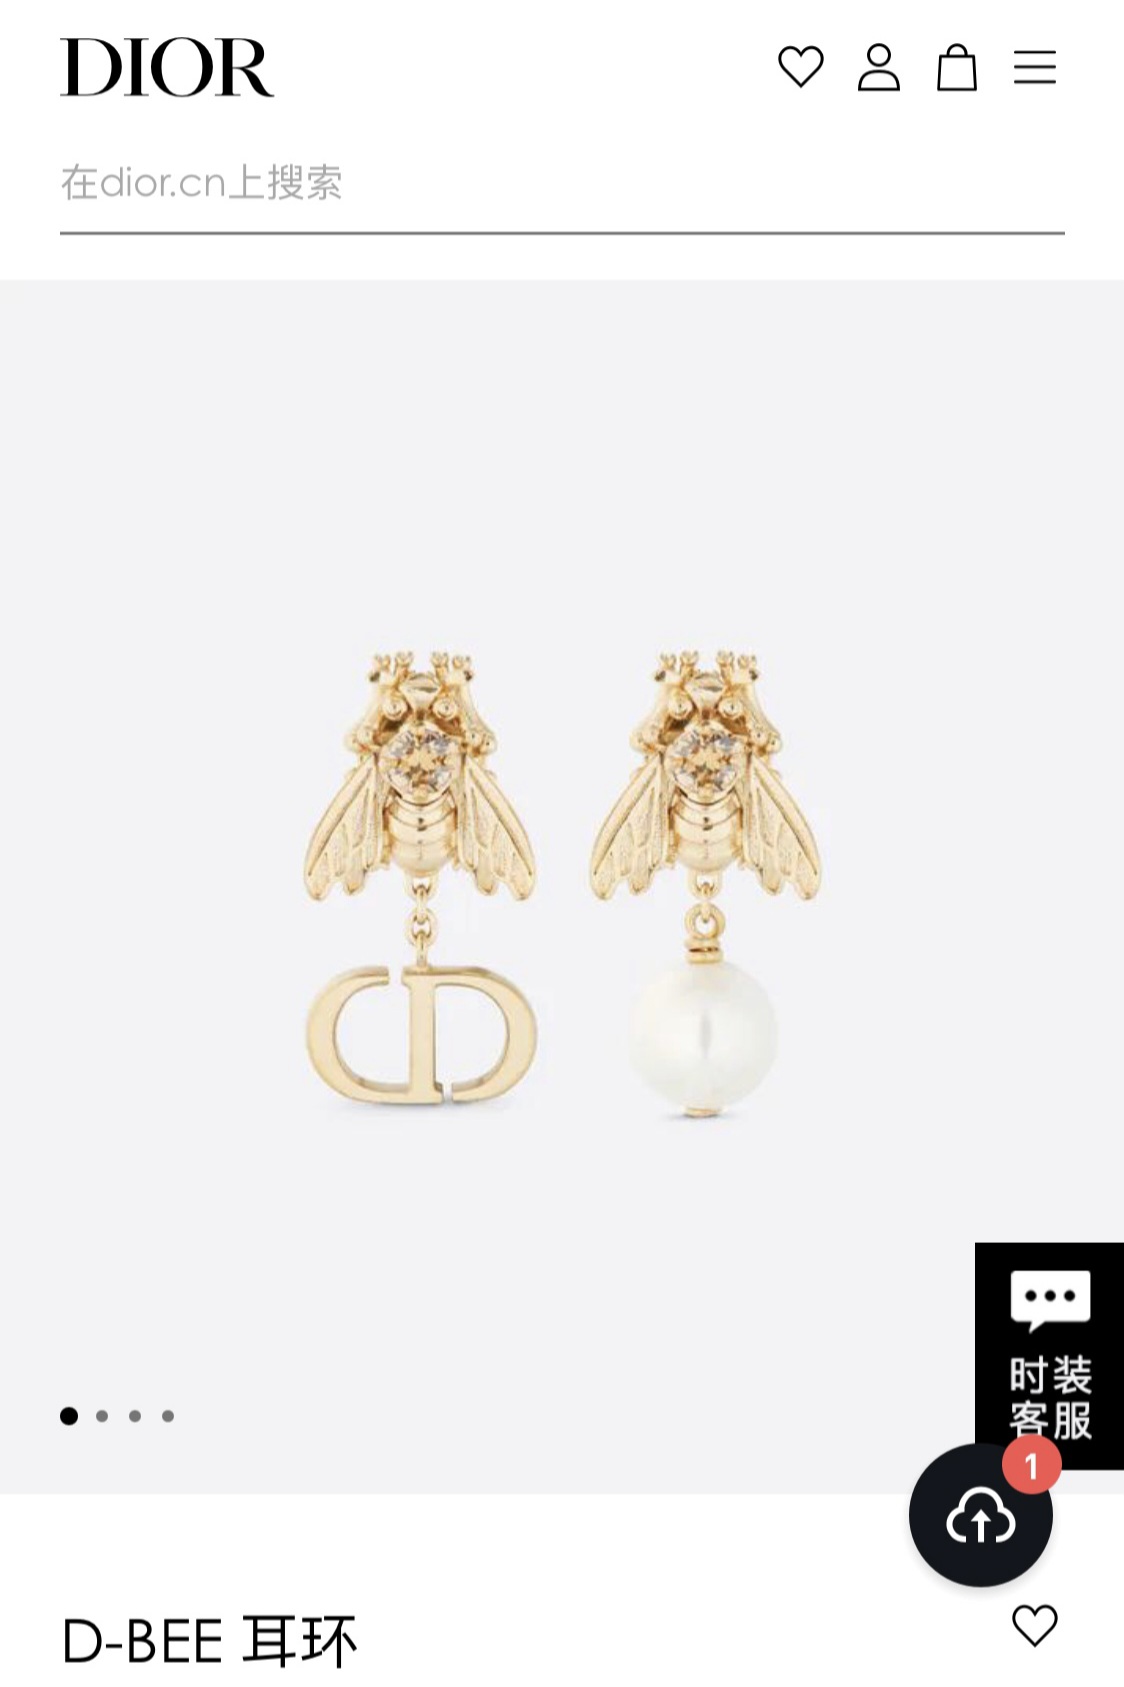 Dior D-Bee earrings